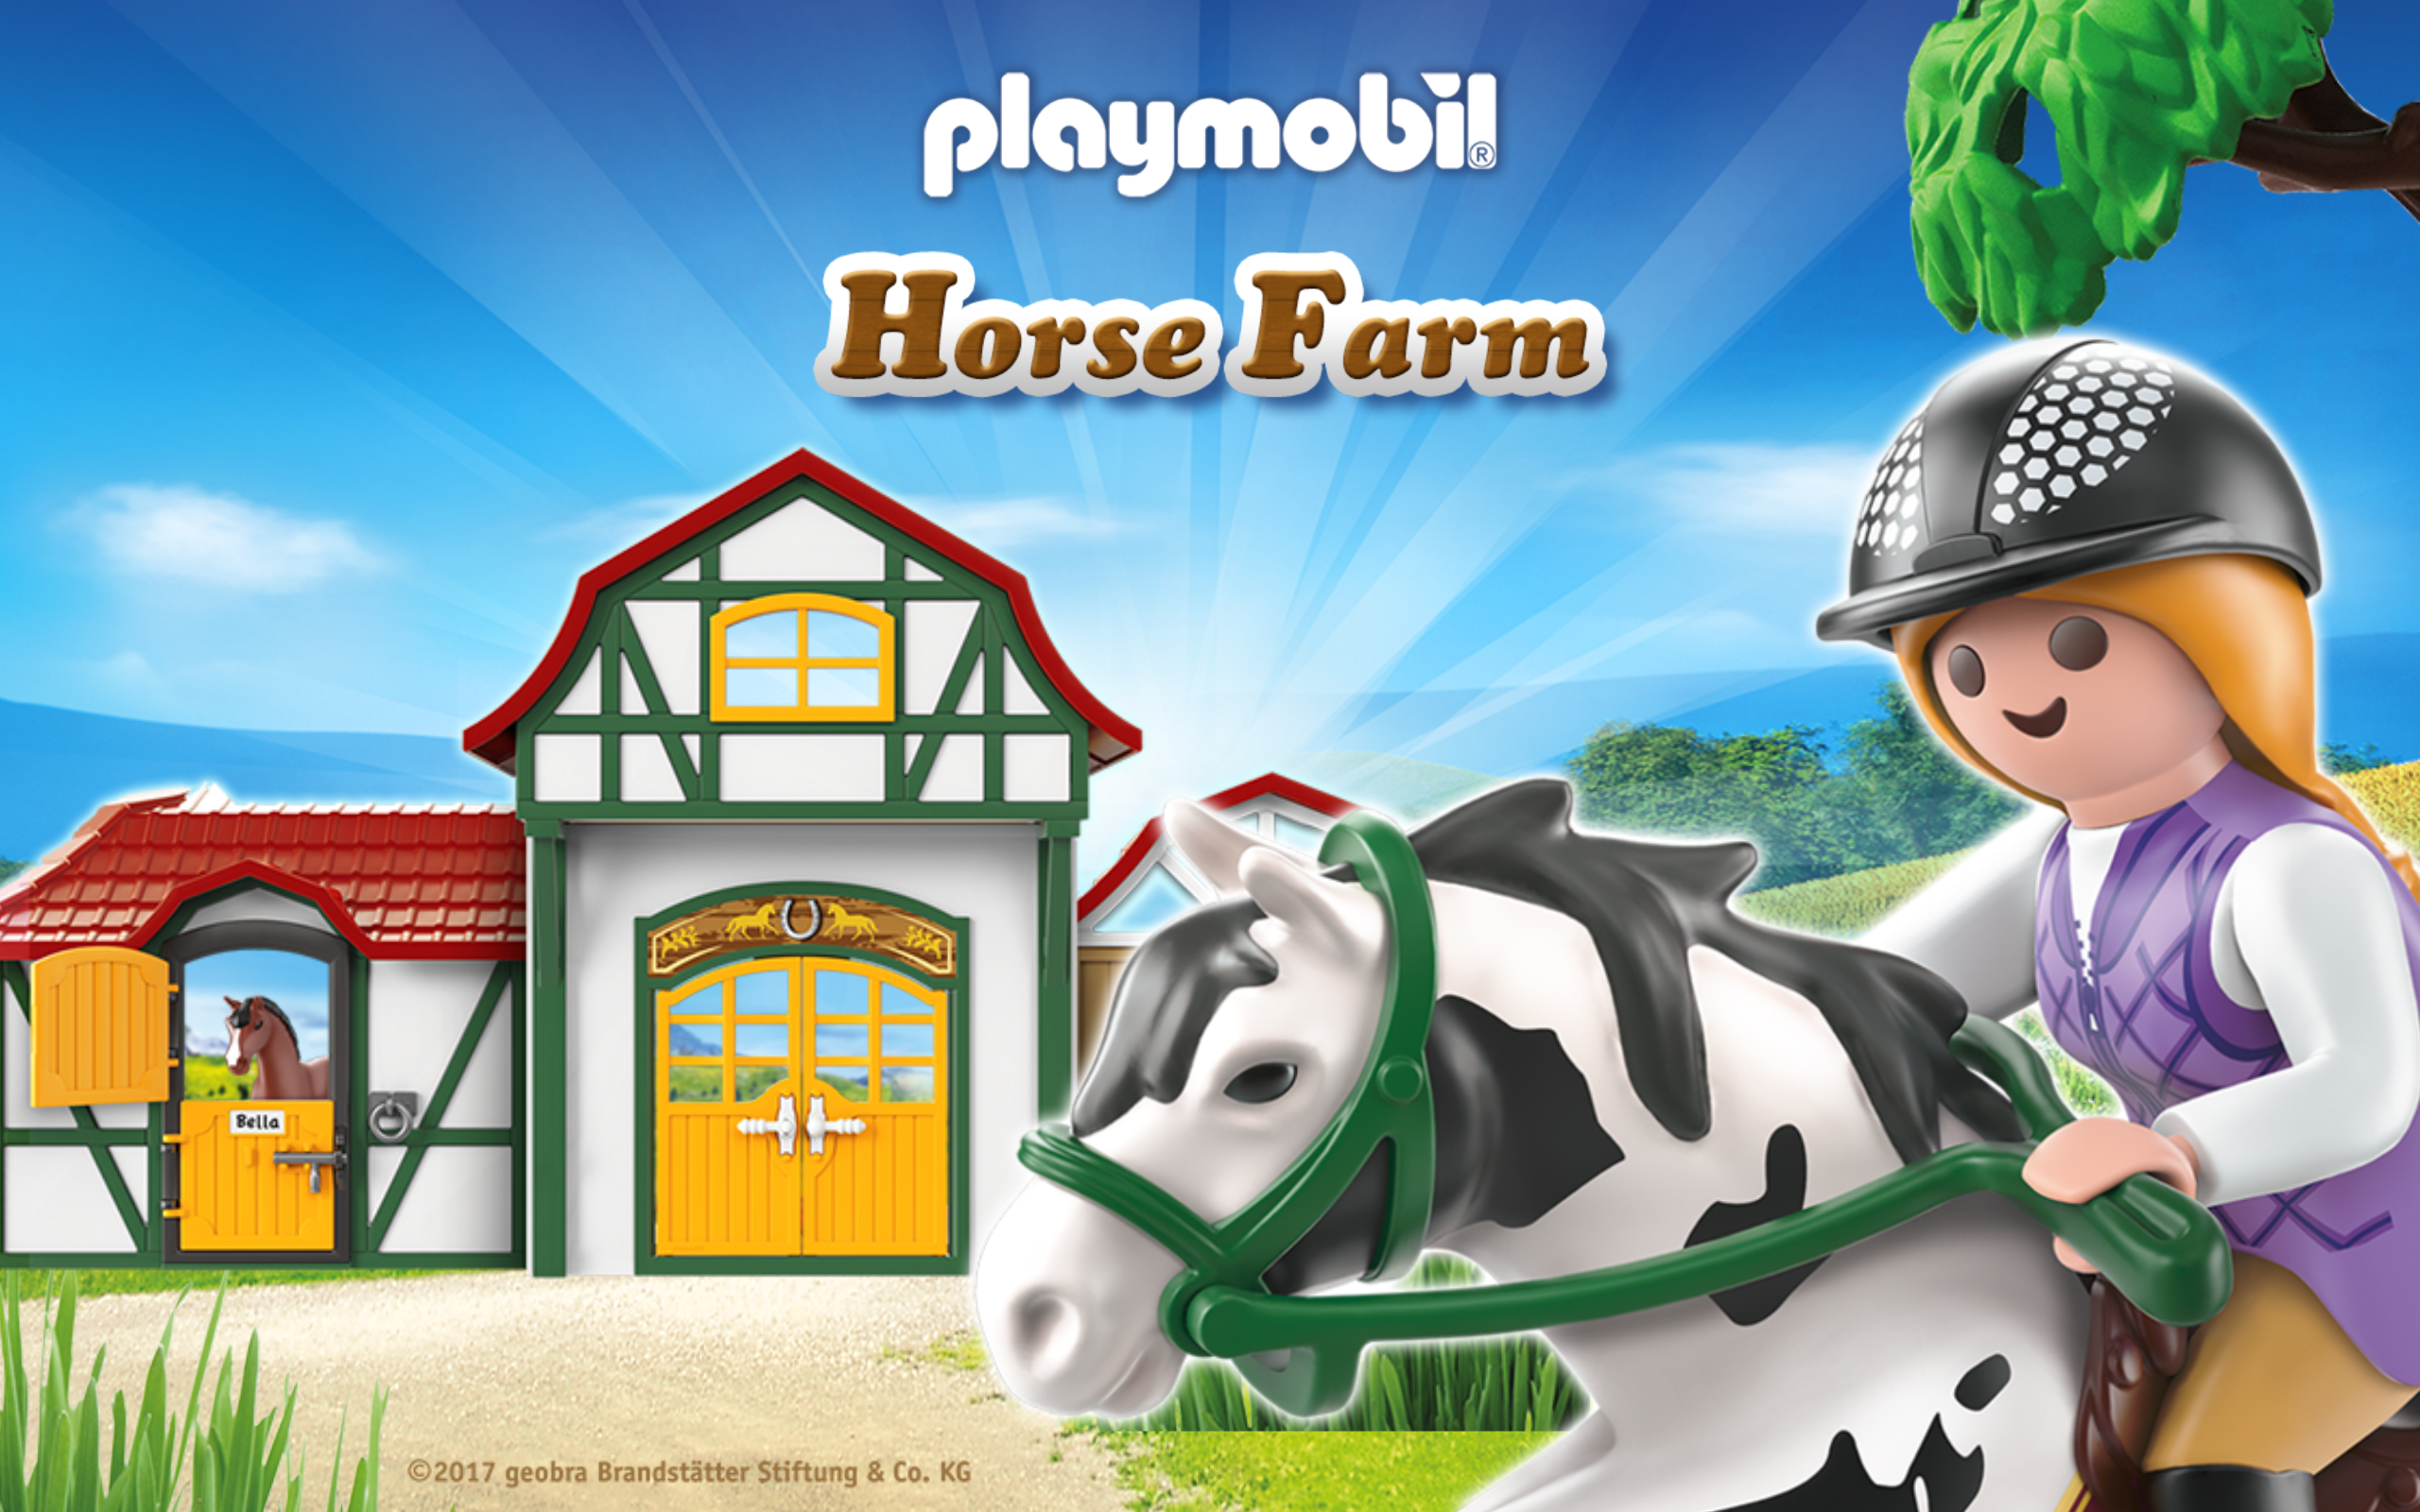 PLAYMOBIL Horse Farm游戏截图